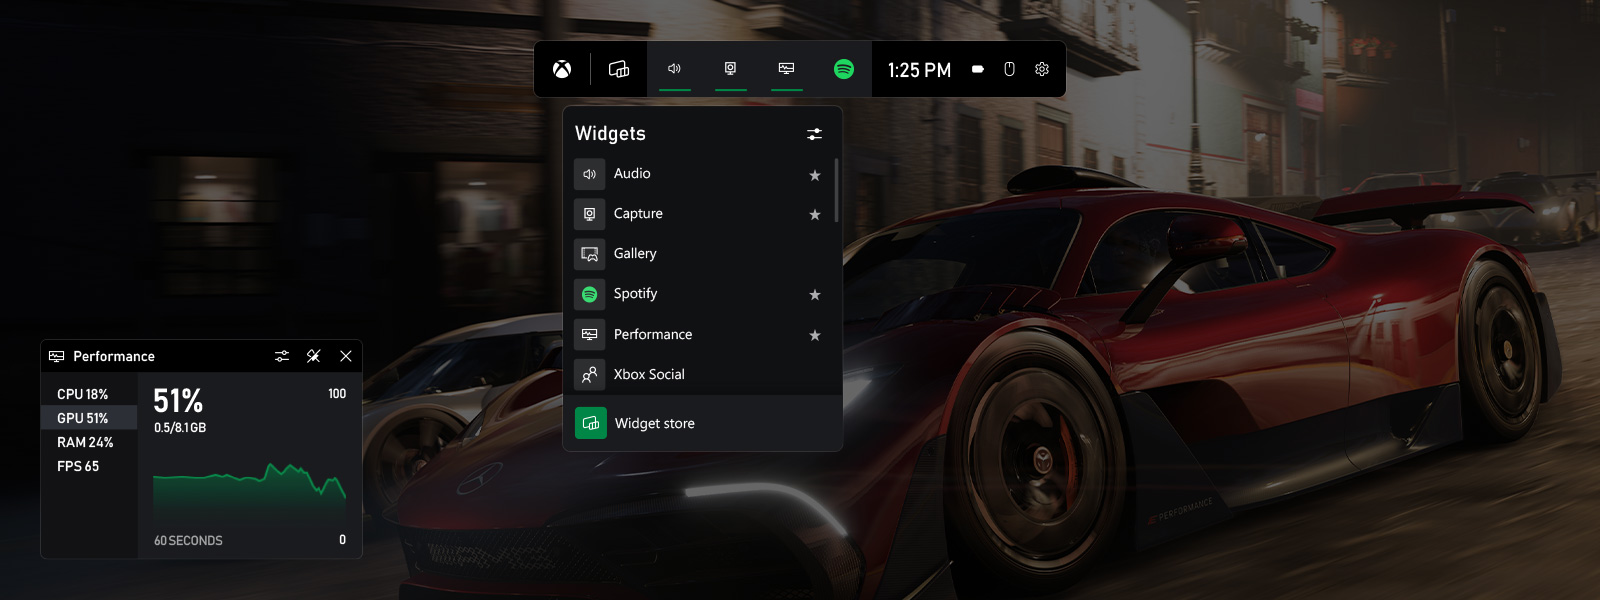 Captura de tela da ferramenta de recursos no painel do Xbox